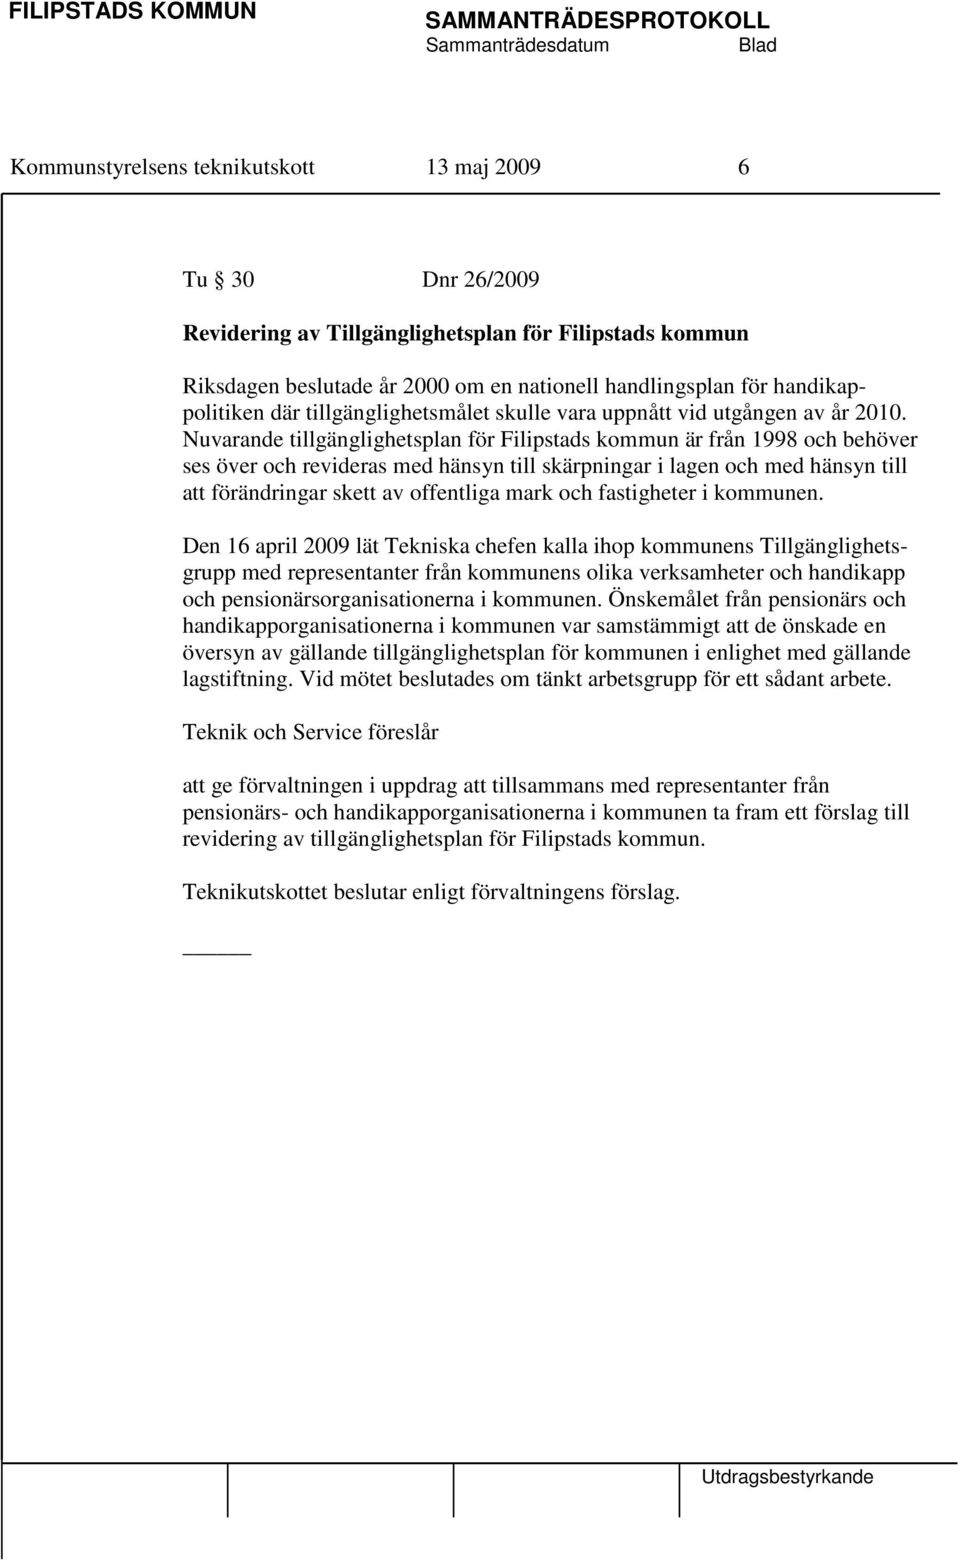 Nuvarande tillgänglighetsplan för Filipstads kommun är från 1998 och behöver ses över och revideras med hänsyn till skärpningar i lagen och med hänsyn till att förändringar skett av offentliga mark